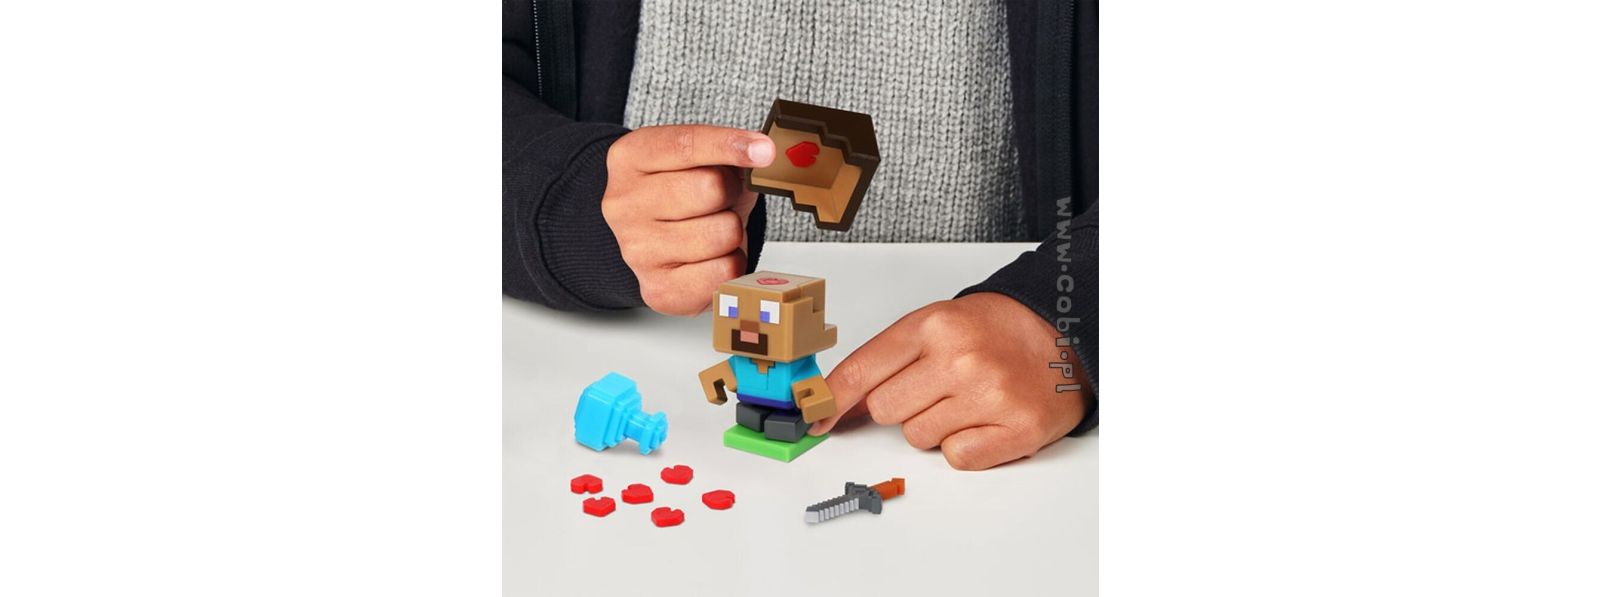 Zabawki Minecraft. Super klocki dla dzieci z kultowej gry!